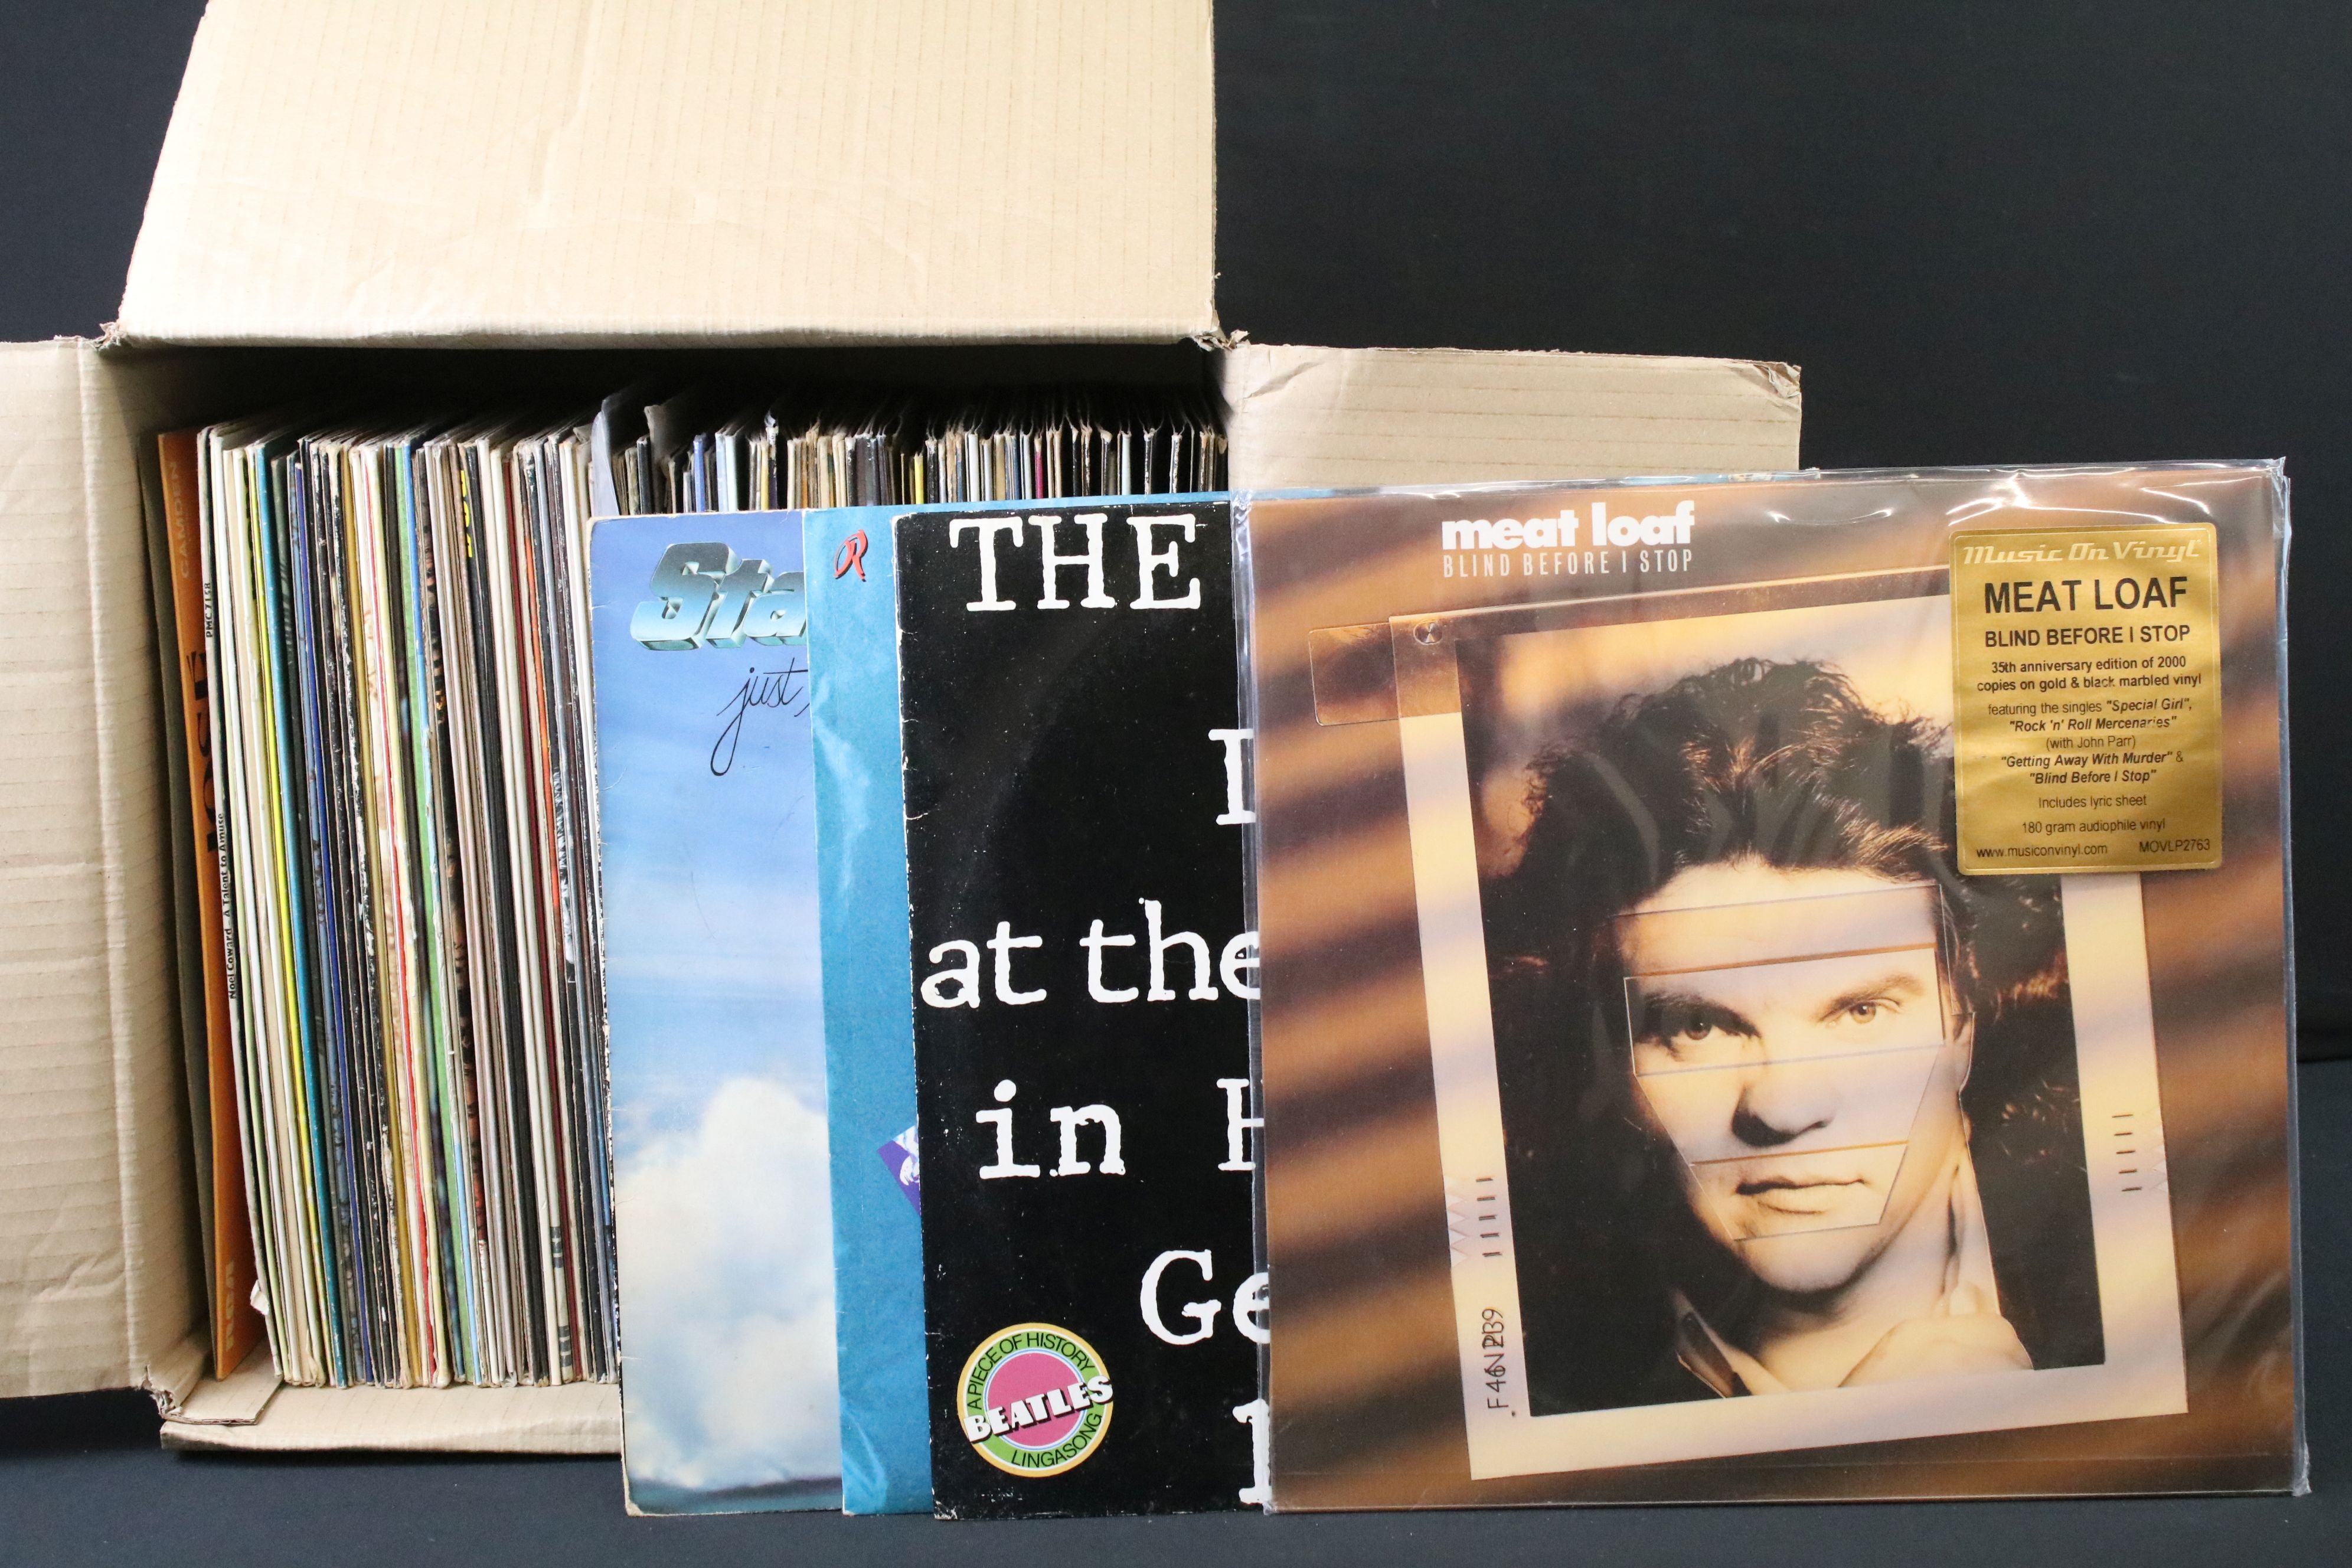 Vinyl - Over 80 Rock & Pop LPs to include Captain Beefheart, Fleetwood Mac, The Doors, The - Image 5 of 7